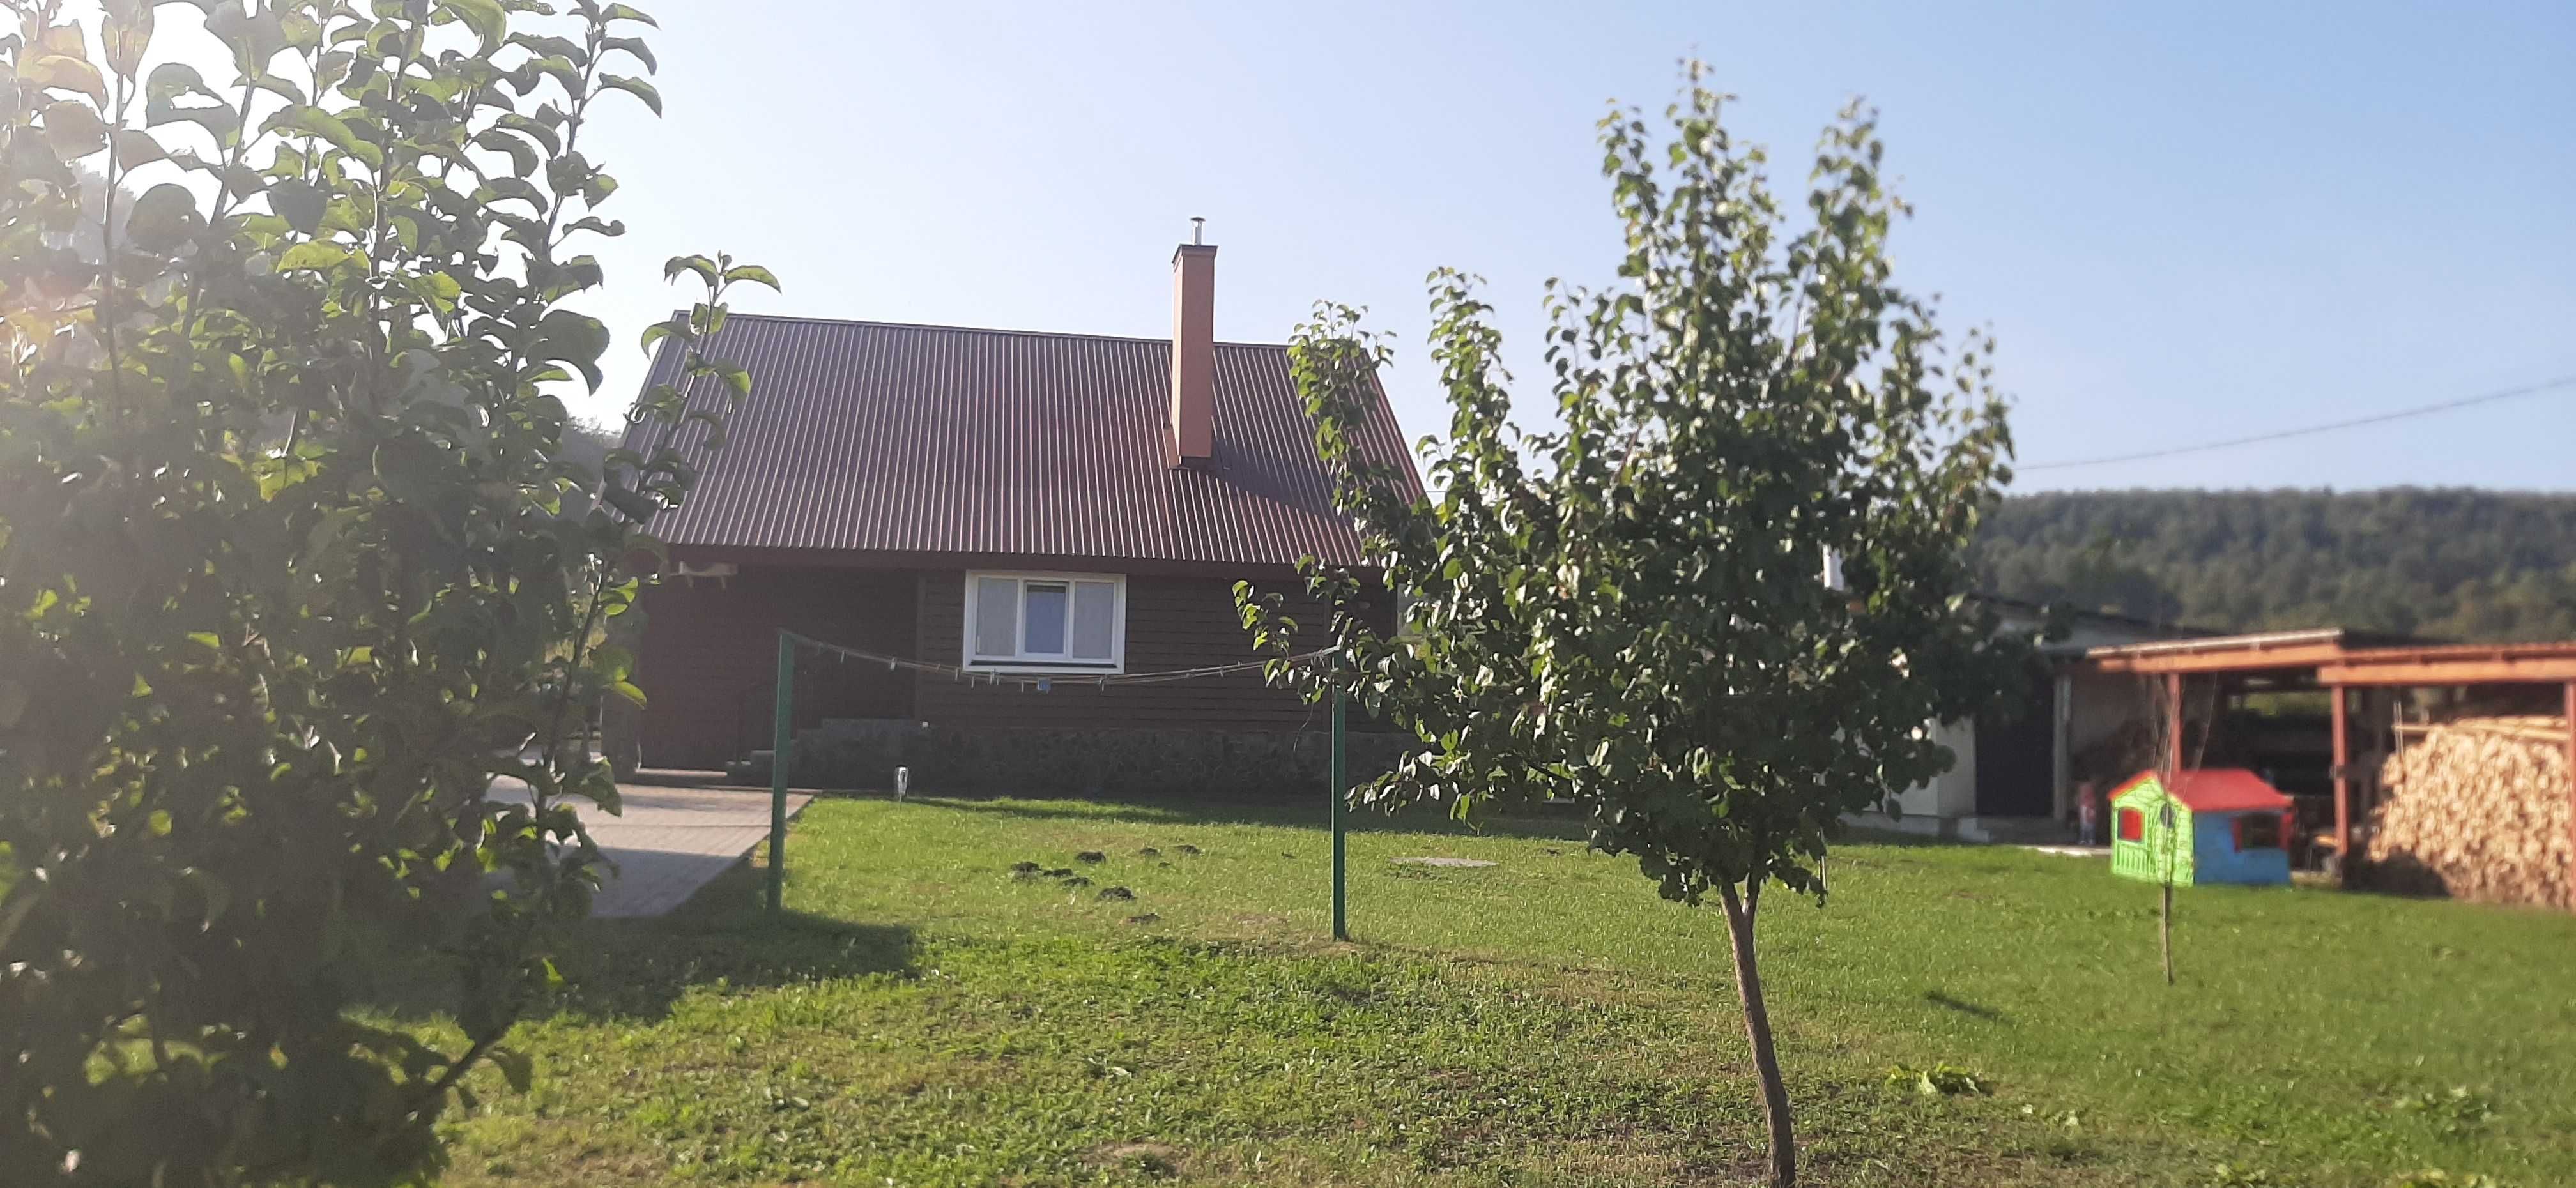 Продаж будинку (105,3м кв) з земельною ділянкою (15сот.) у с. Глинськ